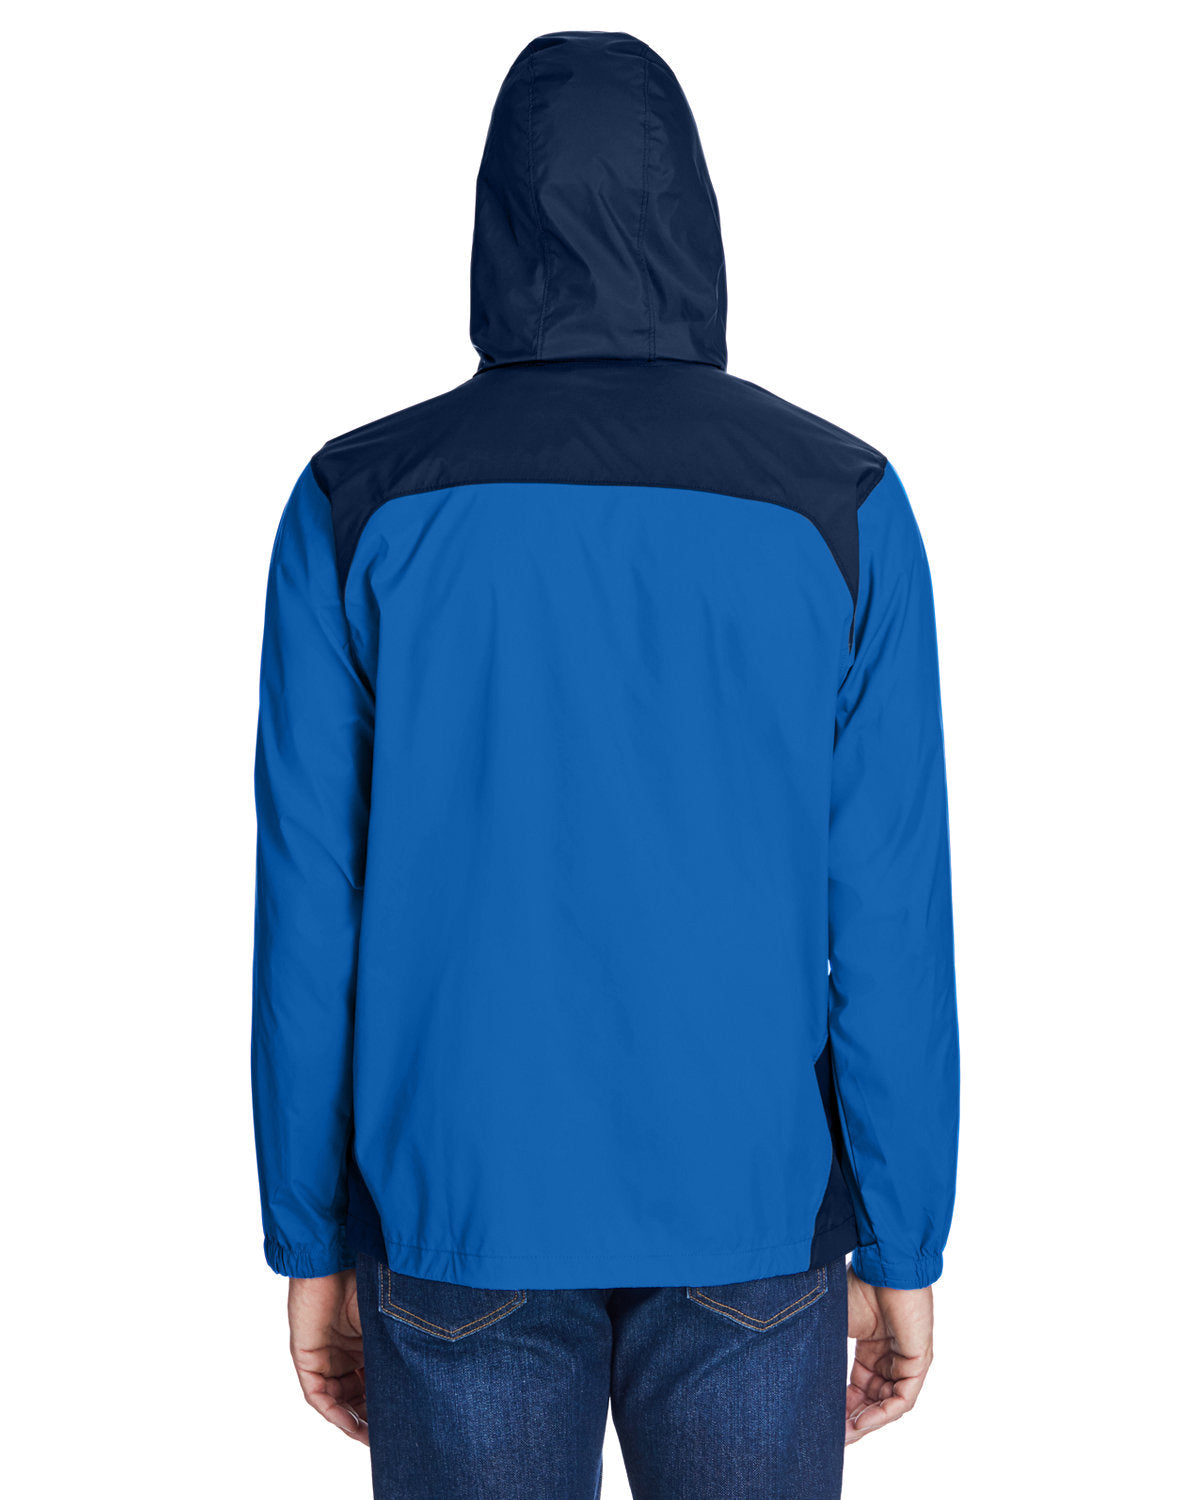 columbia_2015_blue jay/ navy_company_logo_jackets